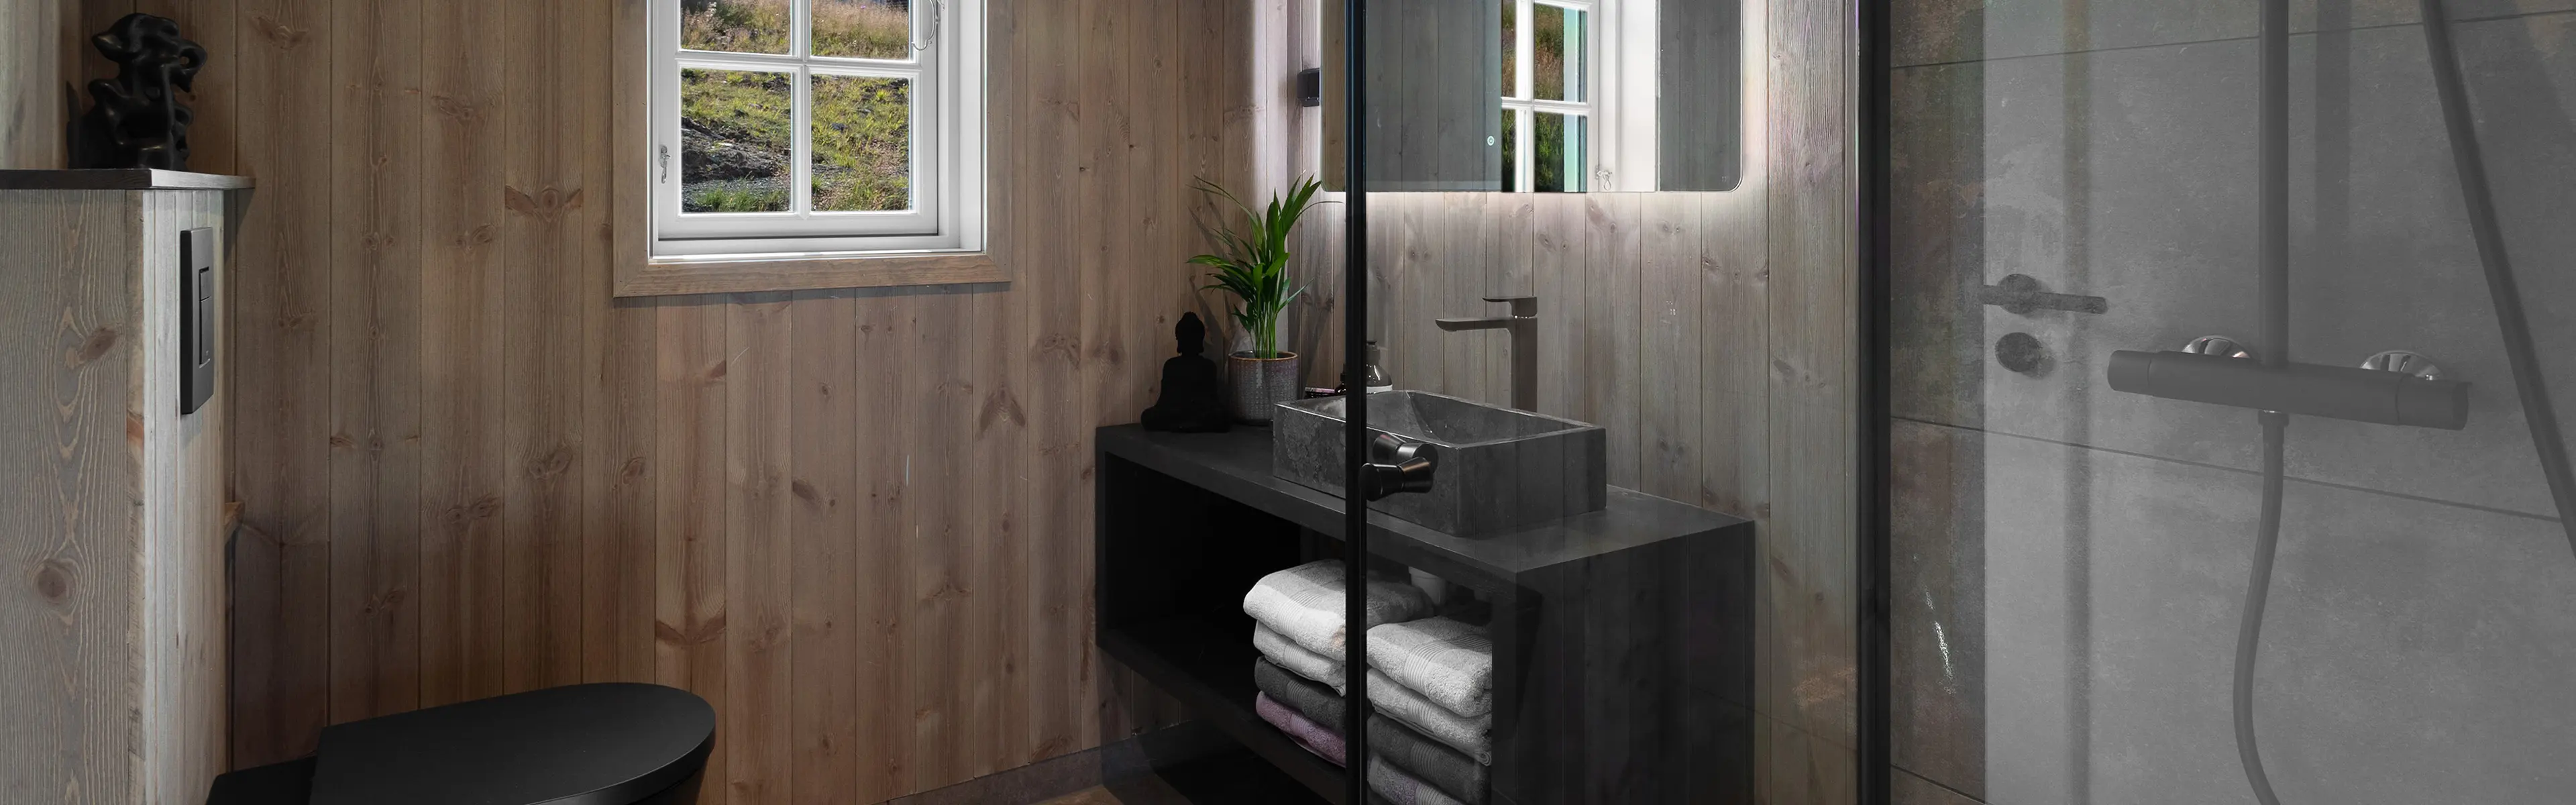 Hyttebad med sorte baderomsmøbler, sort vask og brunt trepanel på veggene.